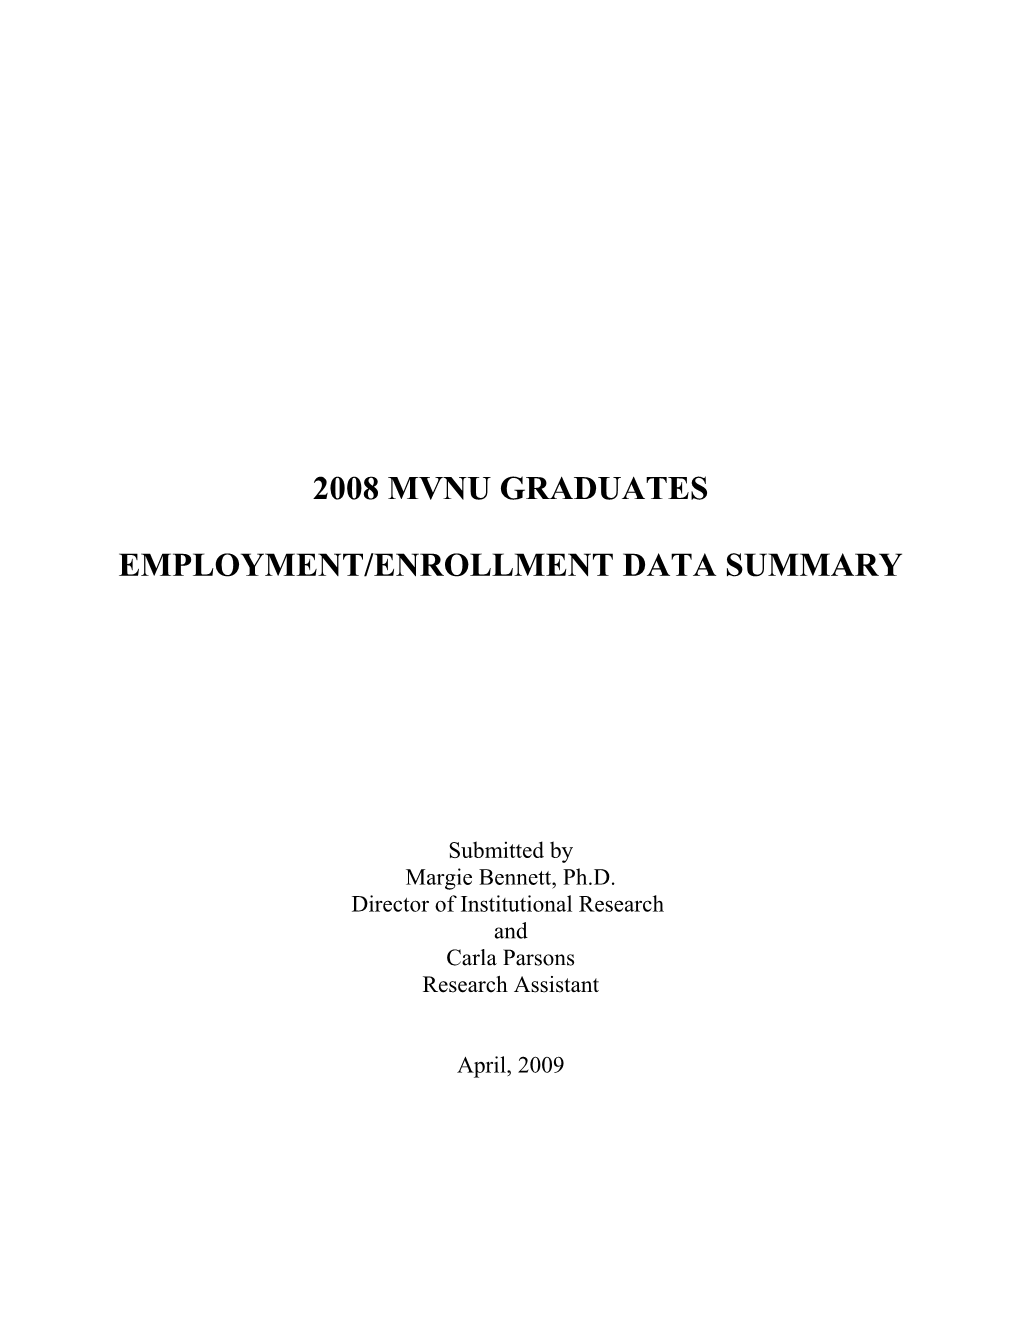 Employment/Enrollment Data Summary